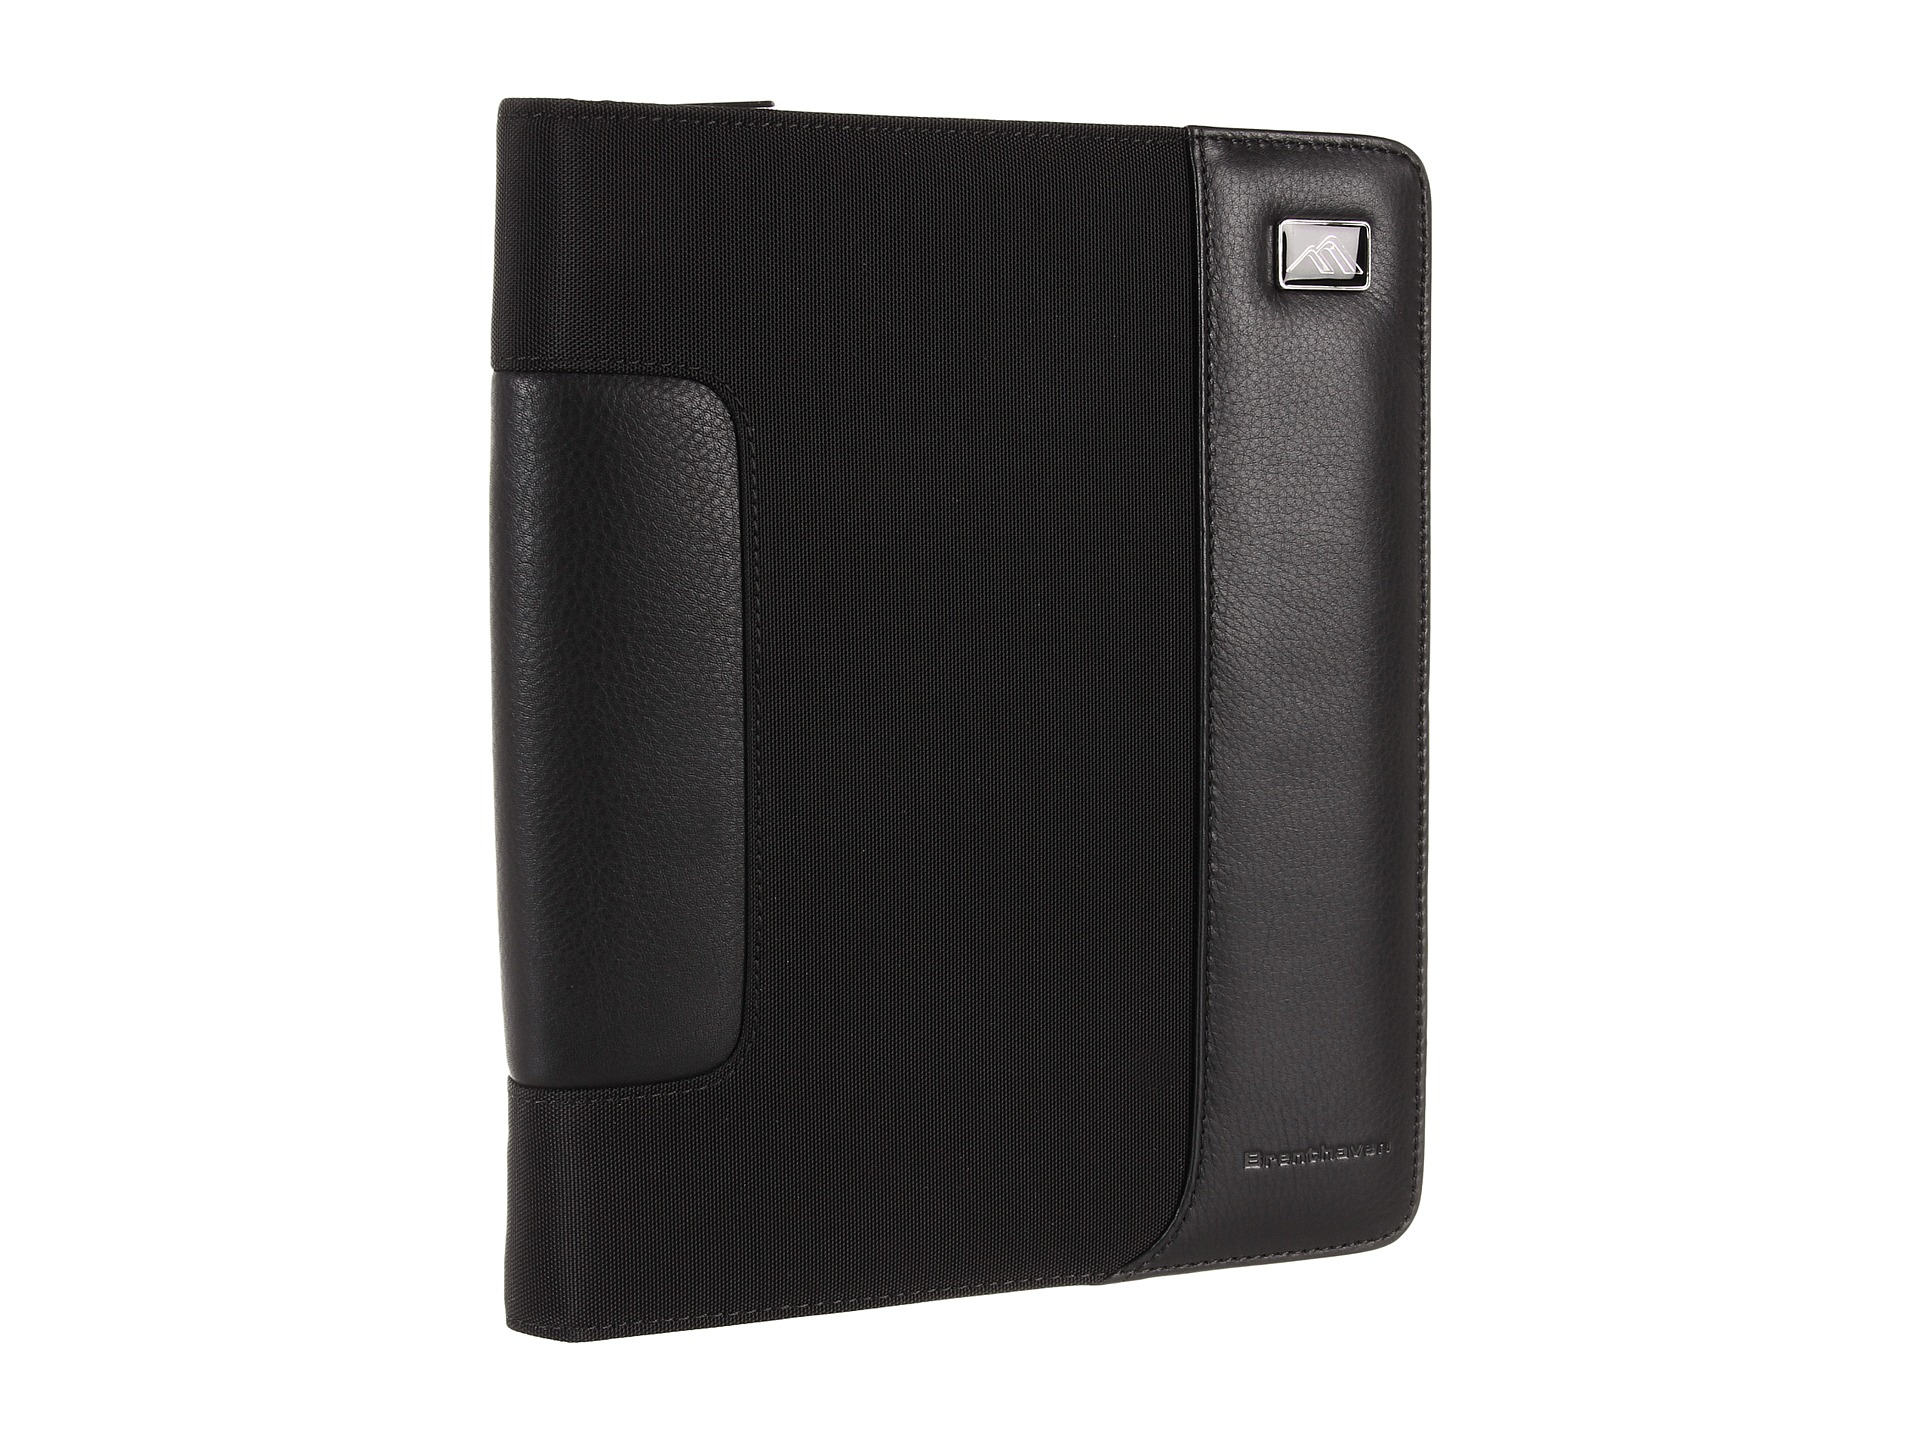 Brenthaven Broadmore Tech Pack Tablet Case Black